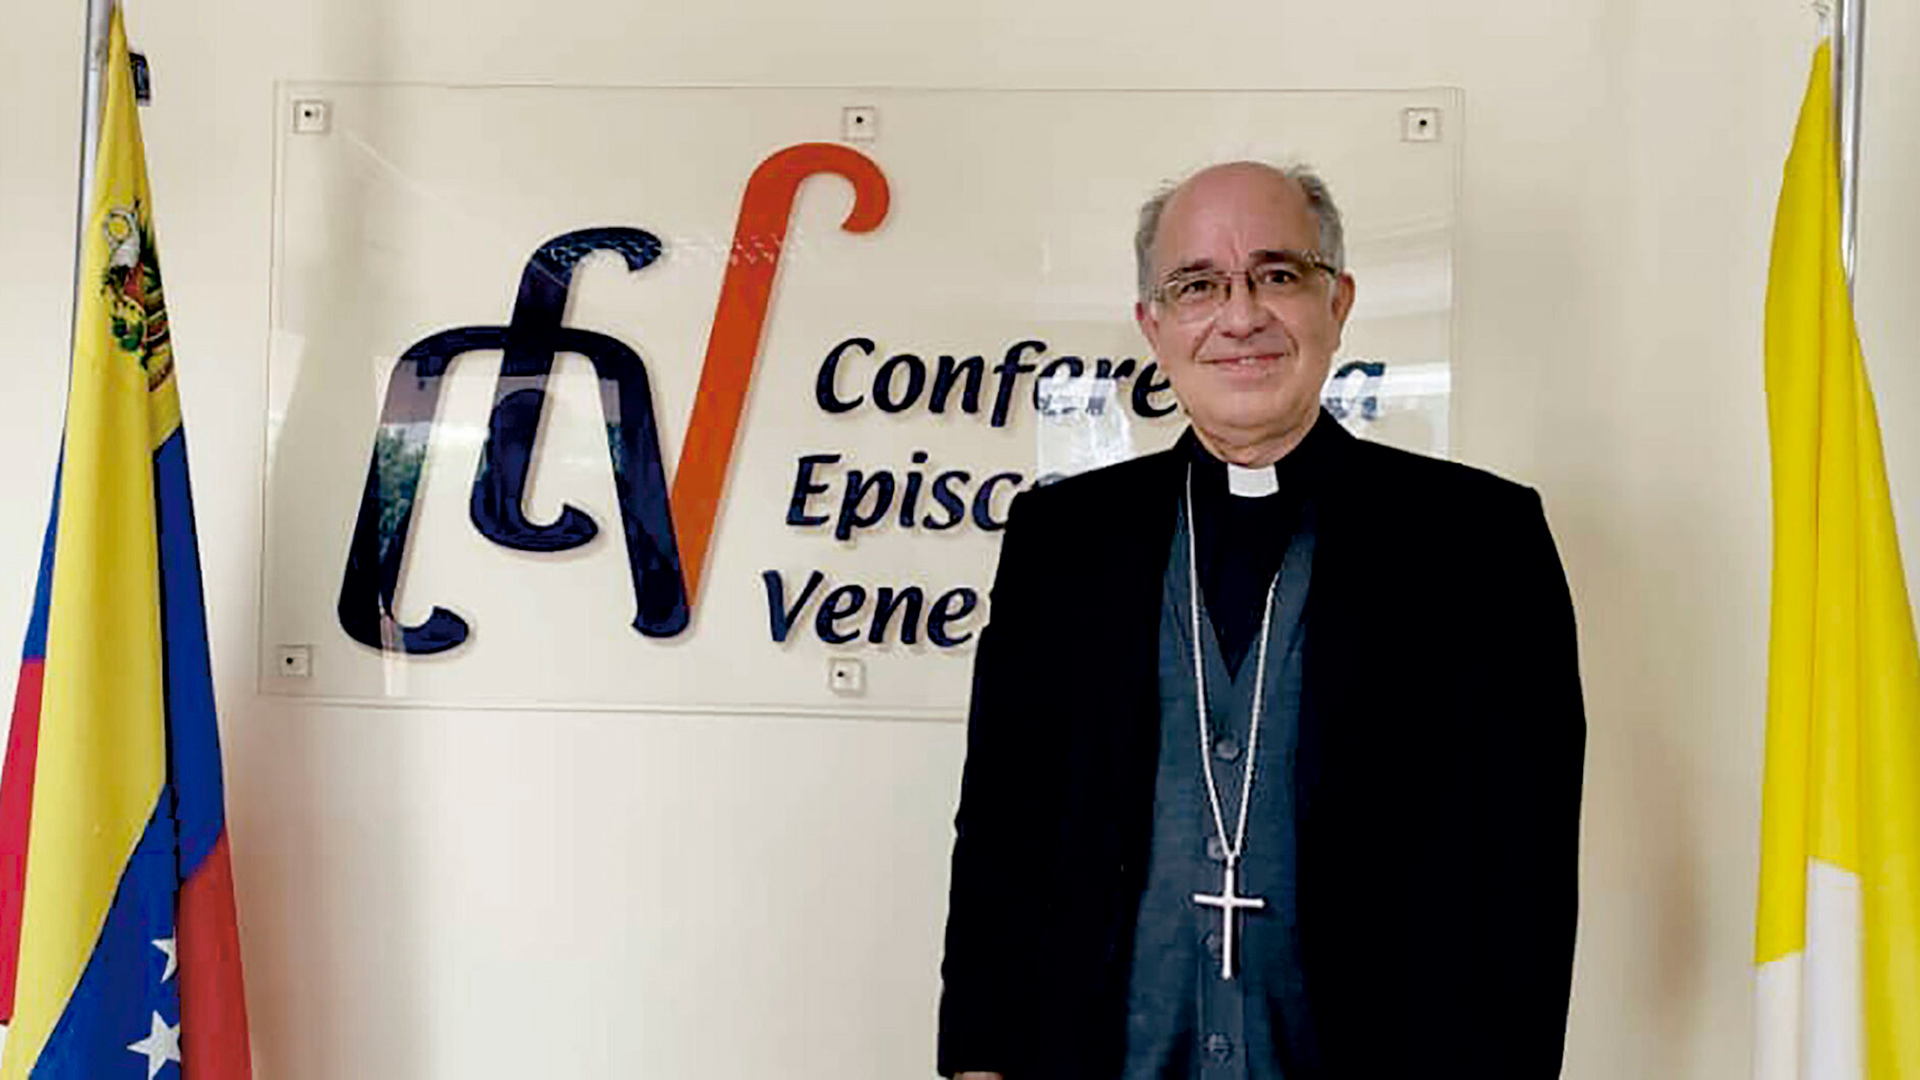 El presidente de la Conferencia Episcopal de Venezuela afirmó que “éste es un año decisivo para la democracia” del país